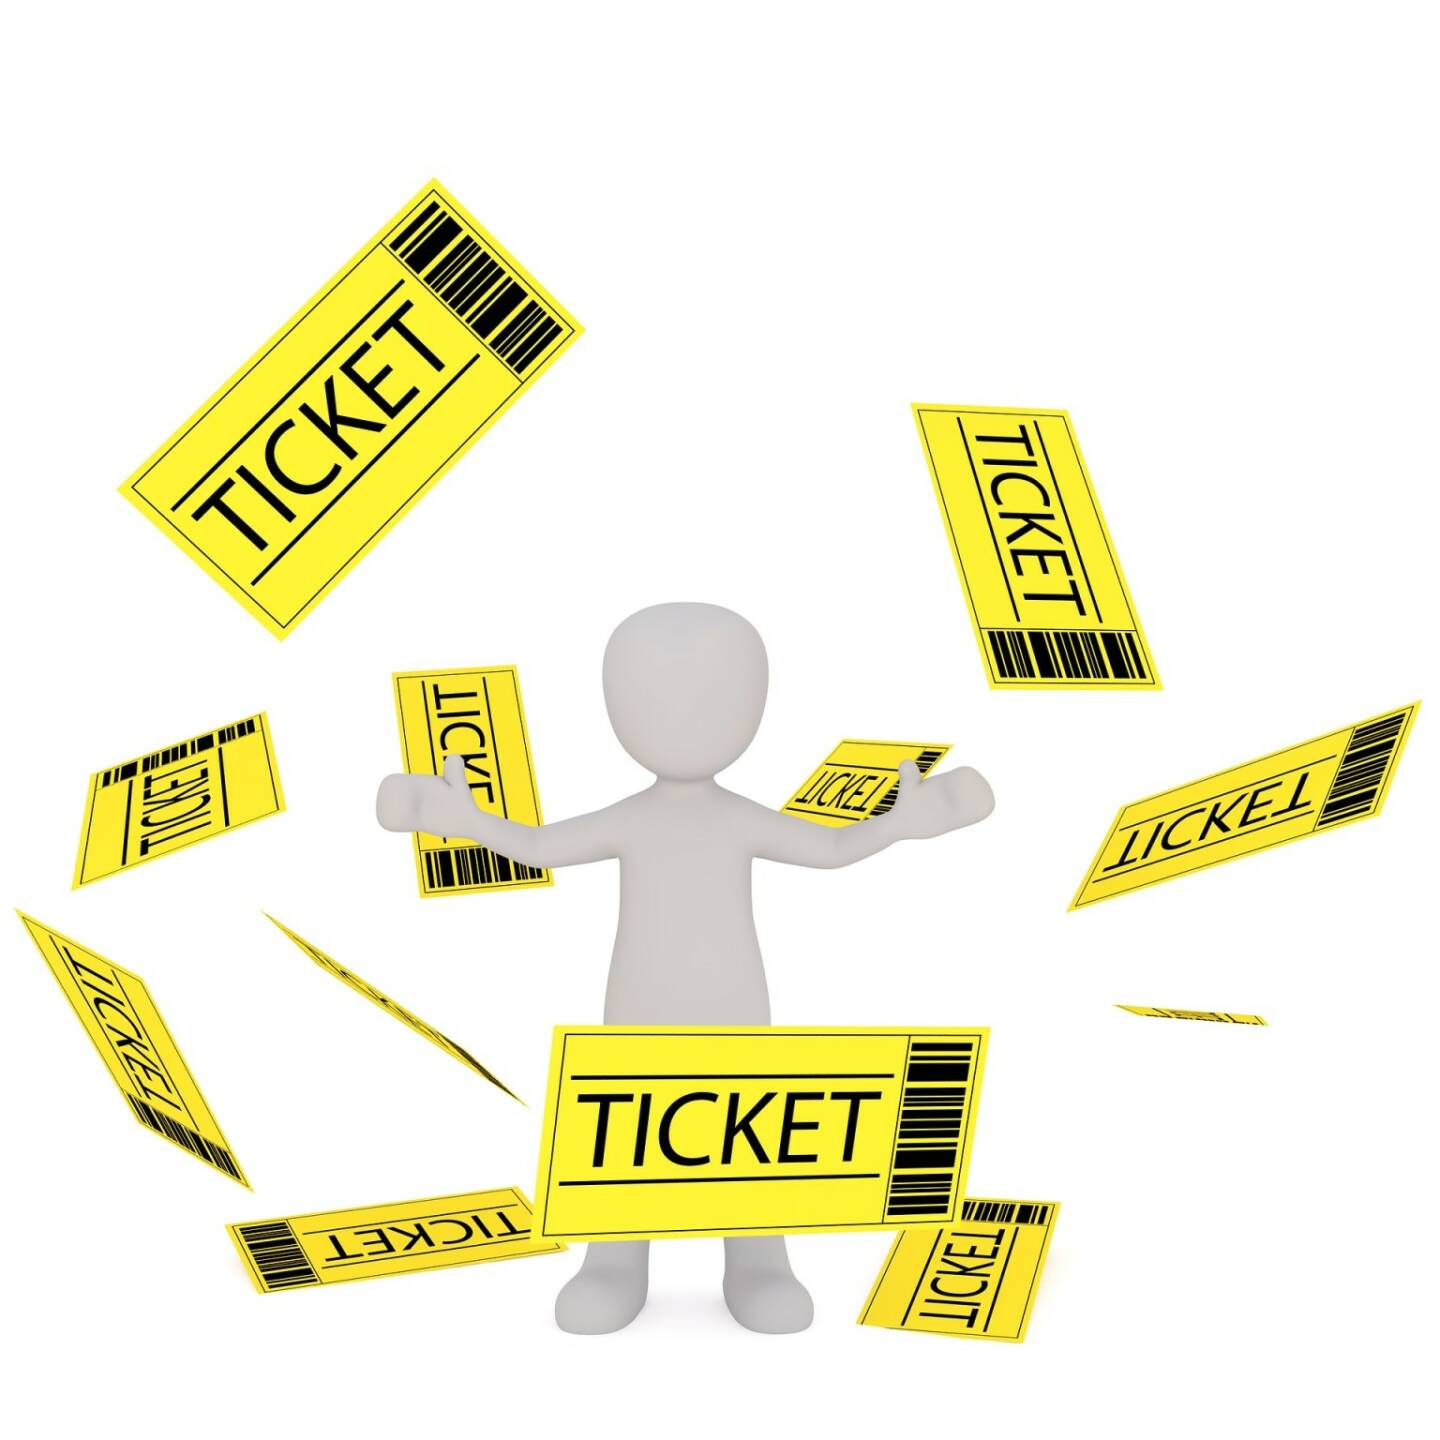 Ticket, Eintritt, Plätze frei (Bild: Pixabay/3dman_eu https://pixabay.com/de/fax-weiße-männchen-3d-model-1904646/ )